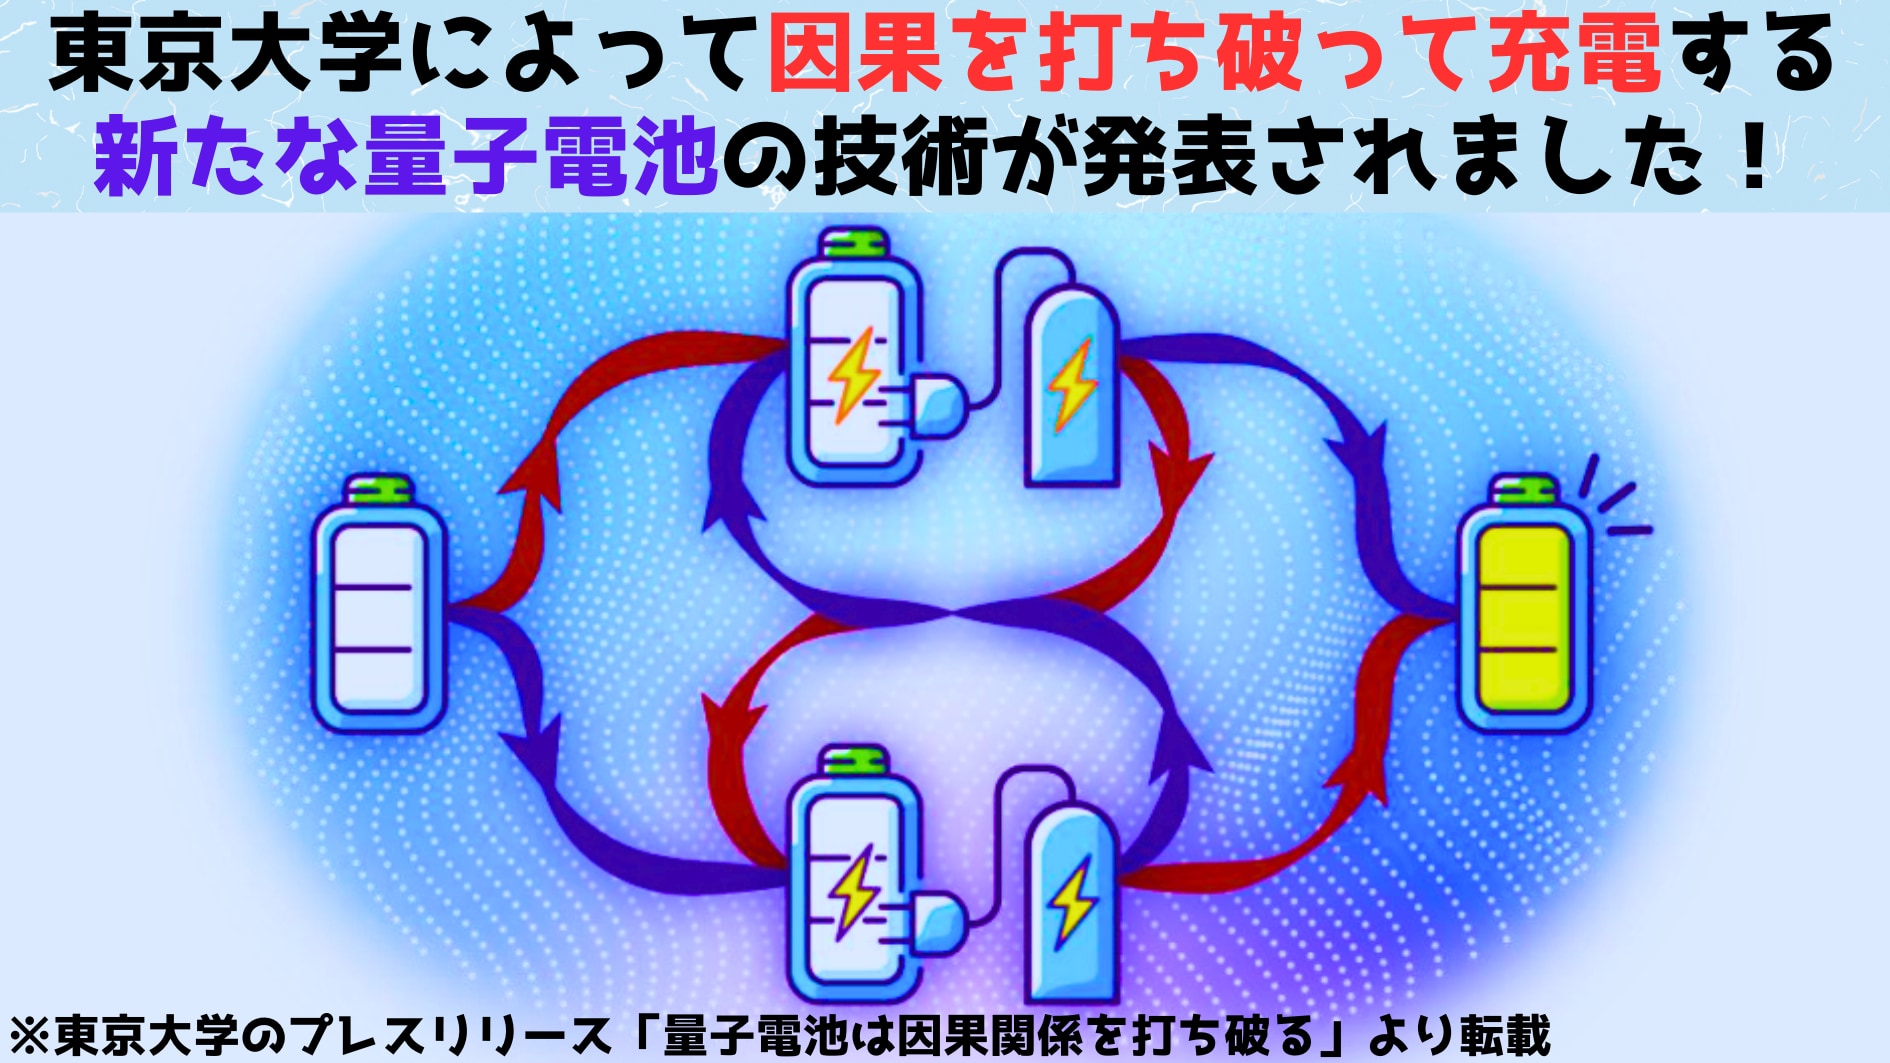 東京大学によって「因果を打ち破って充電」する量子電池が発表